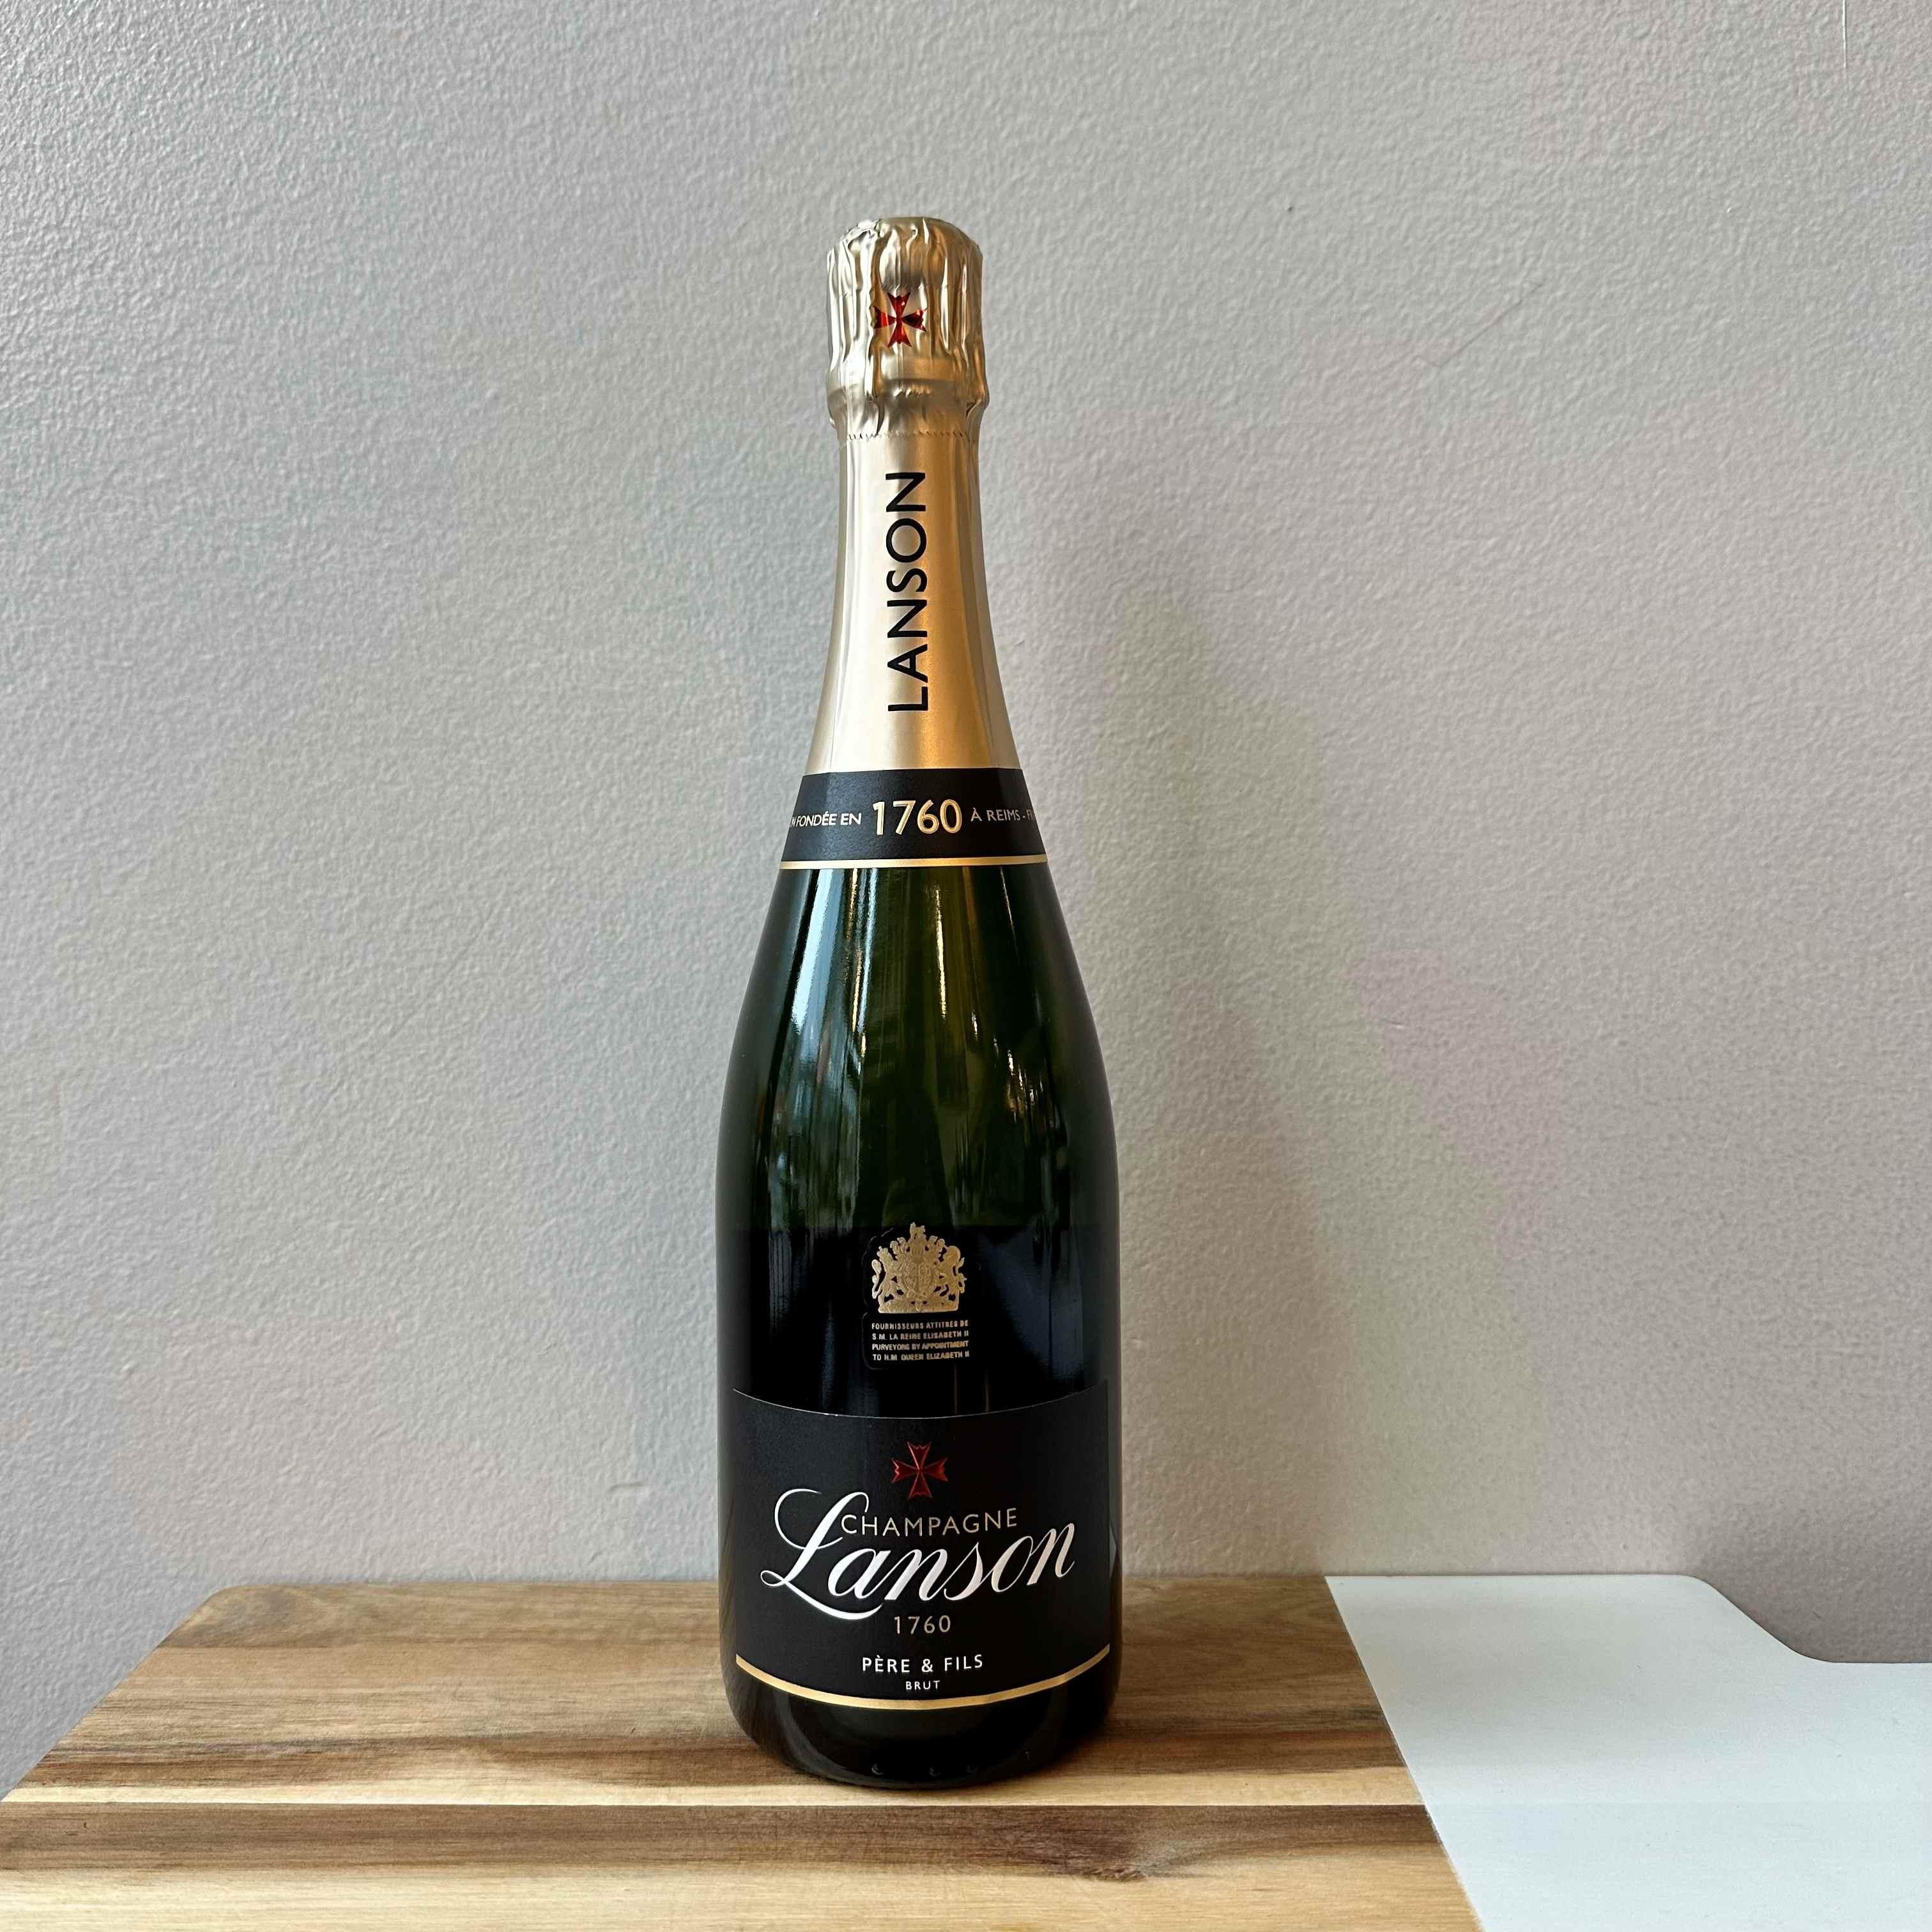 Lanson Brut Champagne N/V France